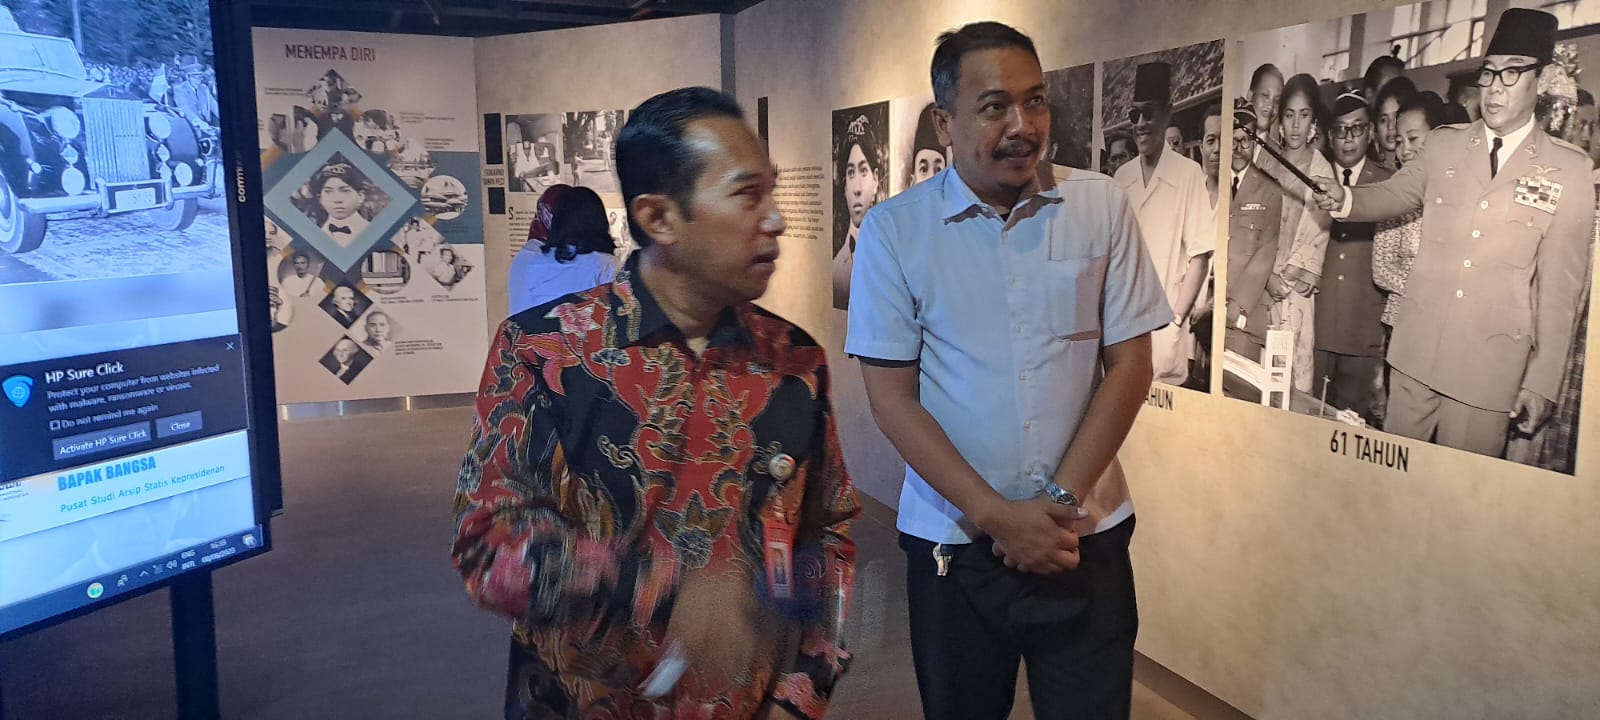 Deputi Bidang Pendidikan dan Pelatihan BPIP, Bapak Tonny Agung Arifianto, S.E., M.A.B kunjungi Pameran Tetap Presiden Pertama Ir. Sukarno